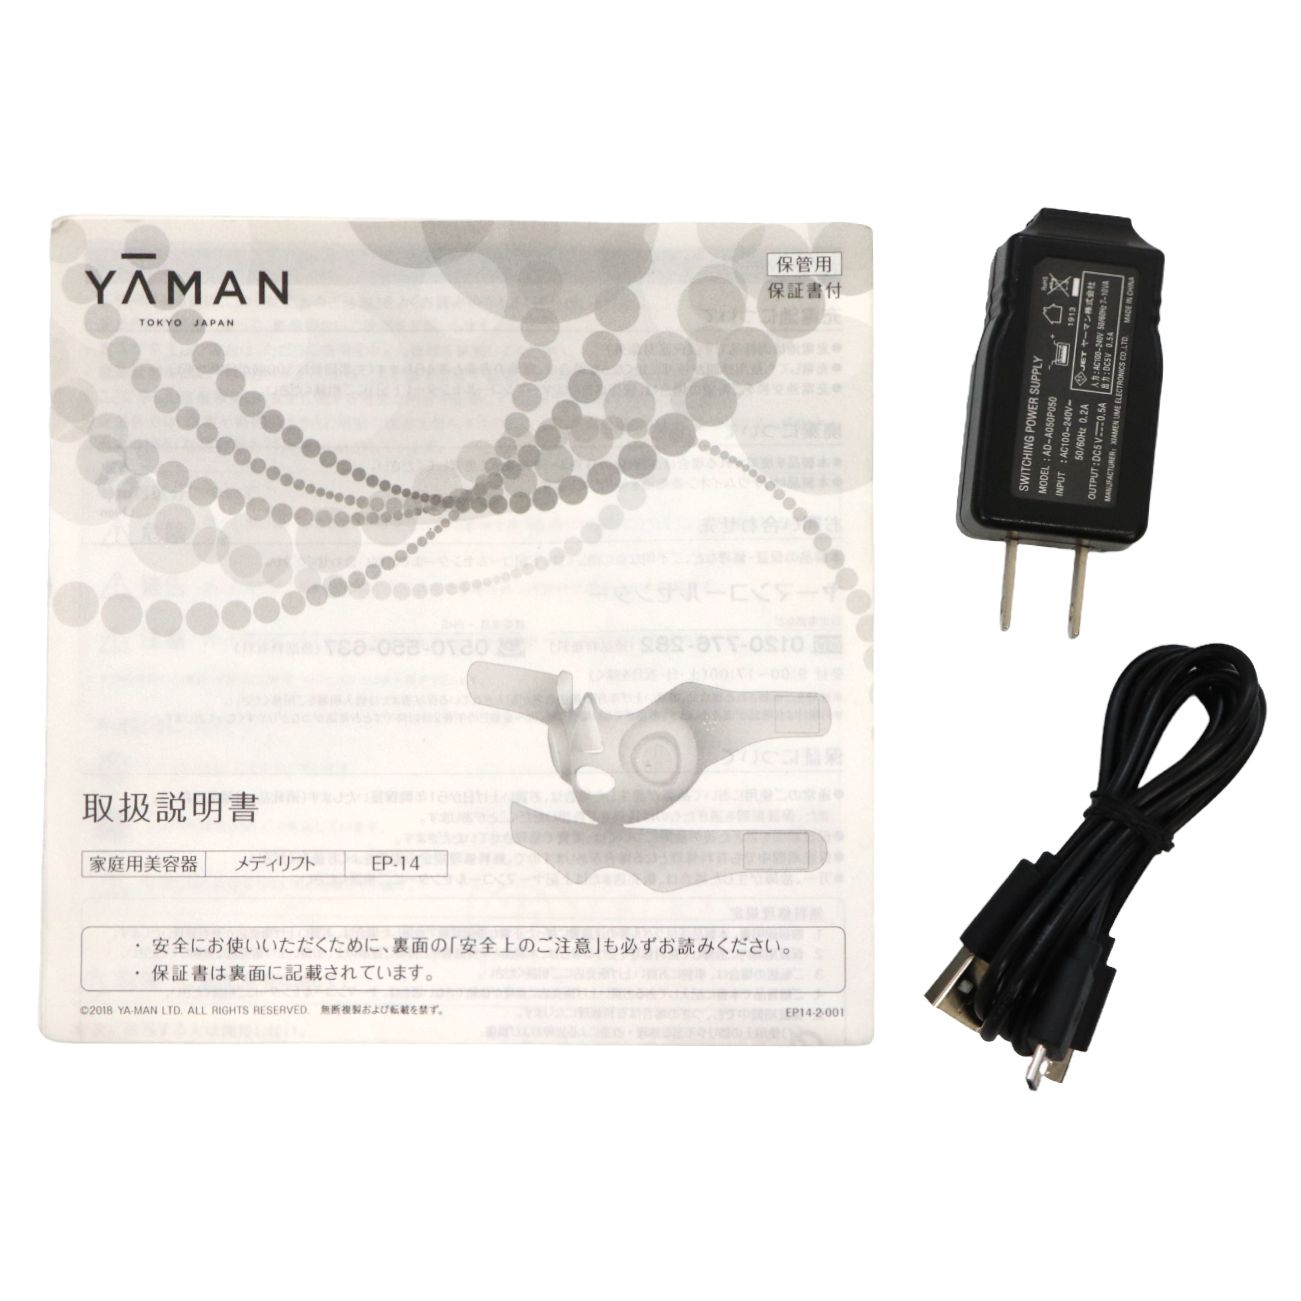 YA-MAN ヤーマン EP-14BB メディリフト 充電器 充電コード - 健康